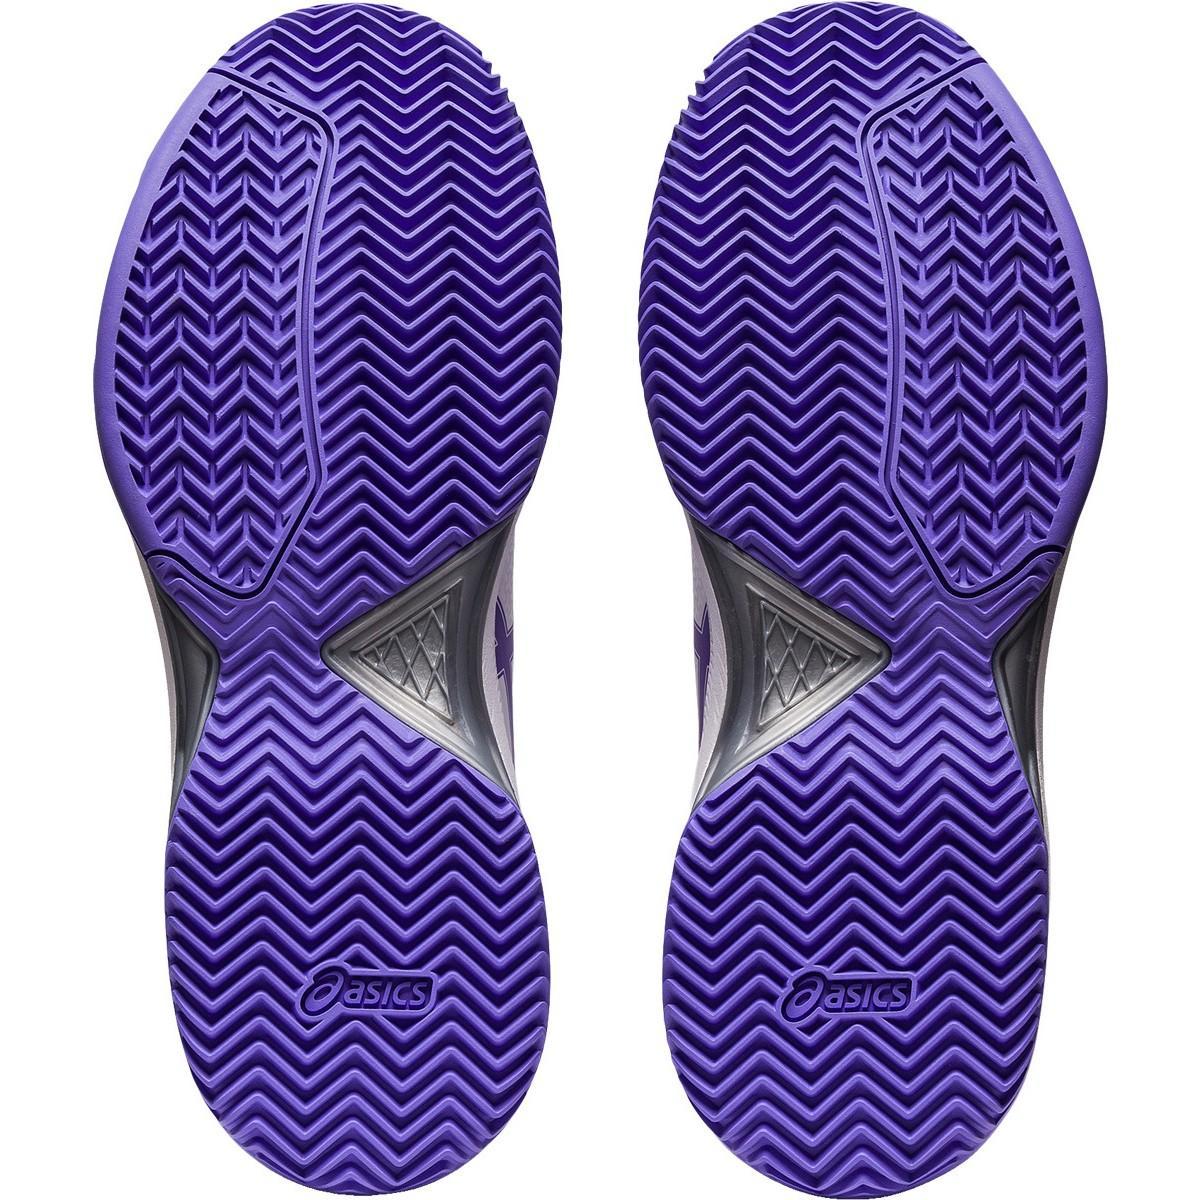 asics scarpa sportiva asics gel-dedicate 7 clay 1042a18.da donna,colore bianco/viola